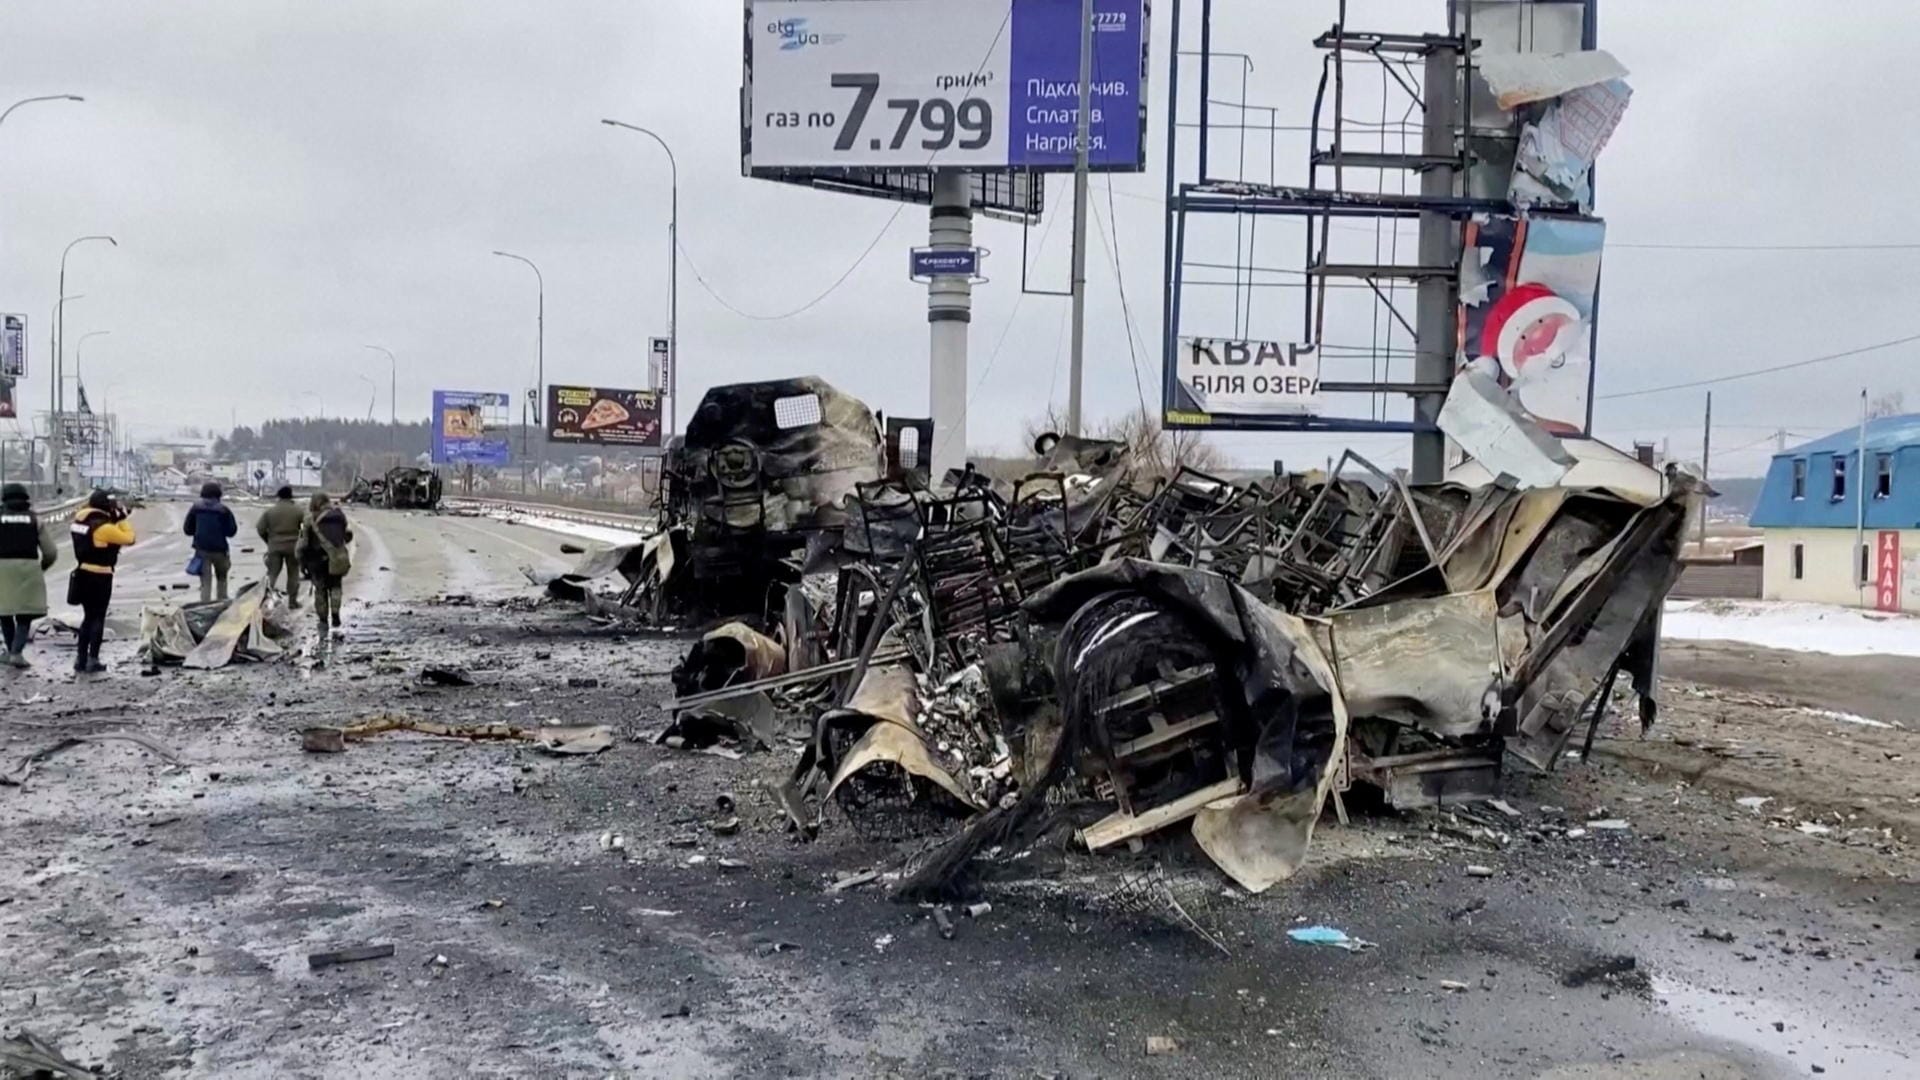 Bucha, Ukraine: Ein völlig zerstörtes Auto auf einer Autobahn.